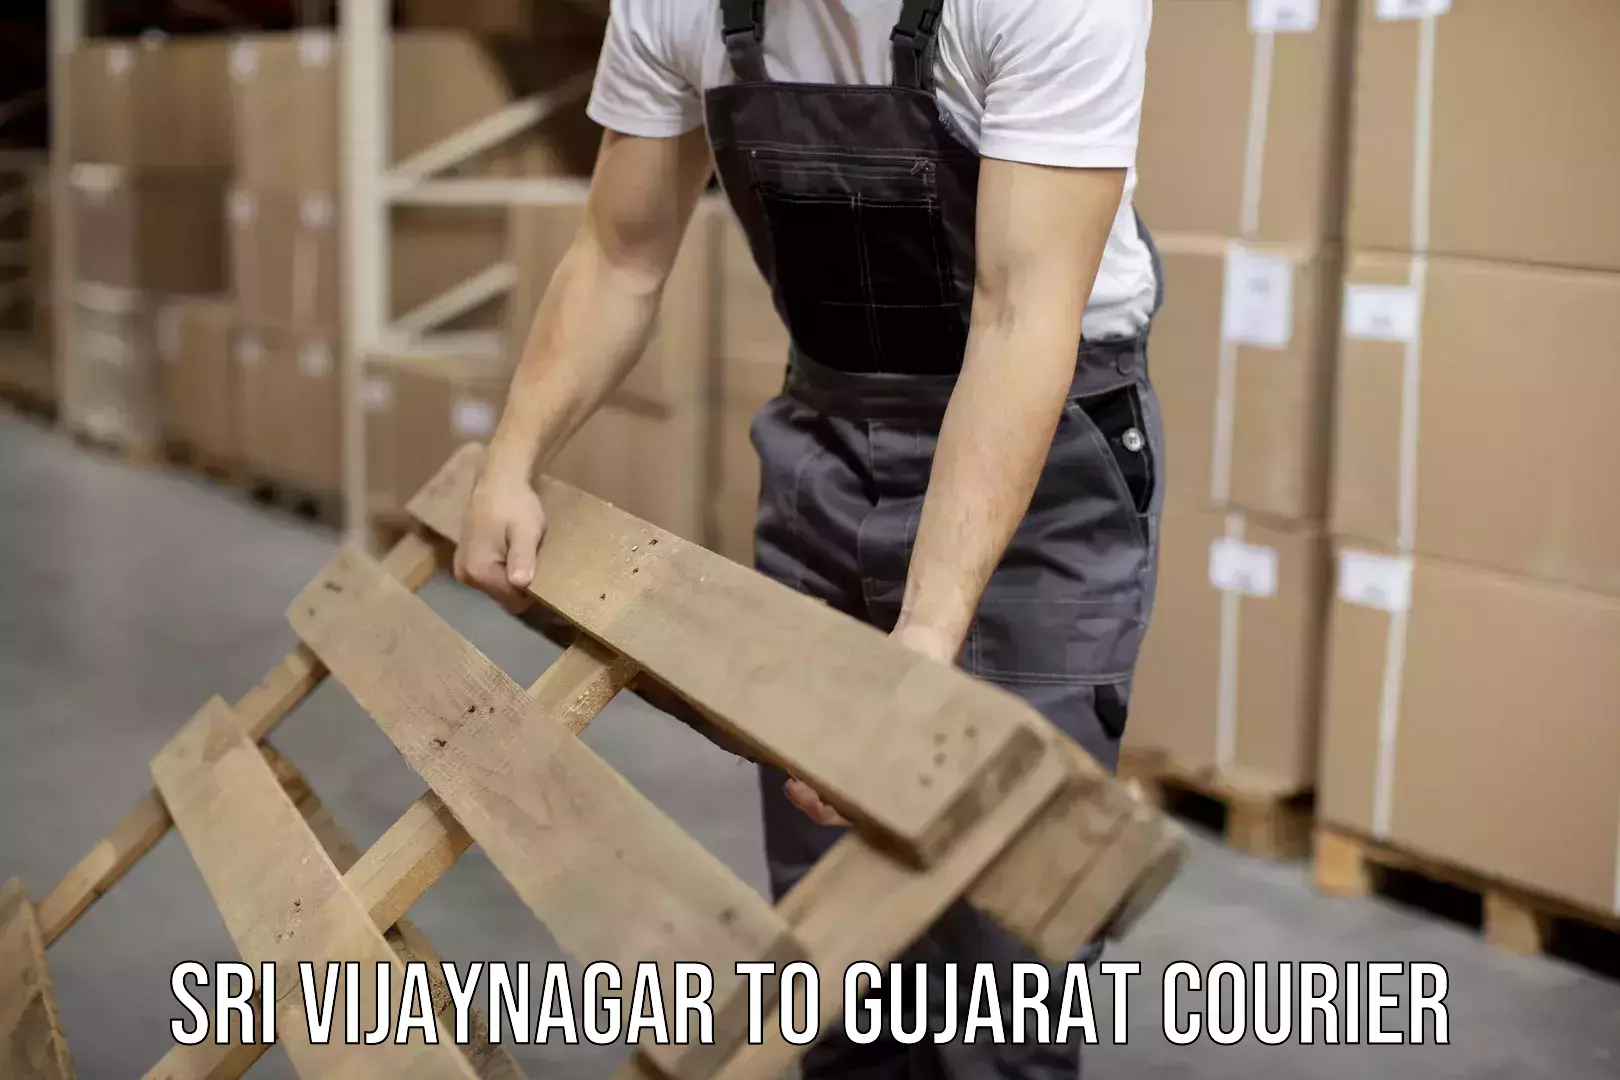 Custom courier packaging Sri Vijaynagar to Gujarat